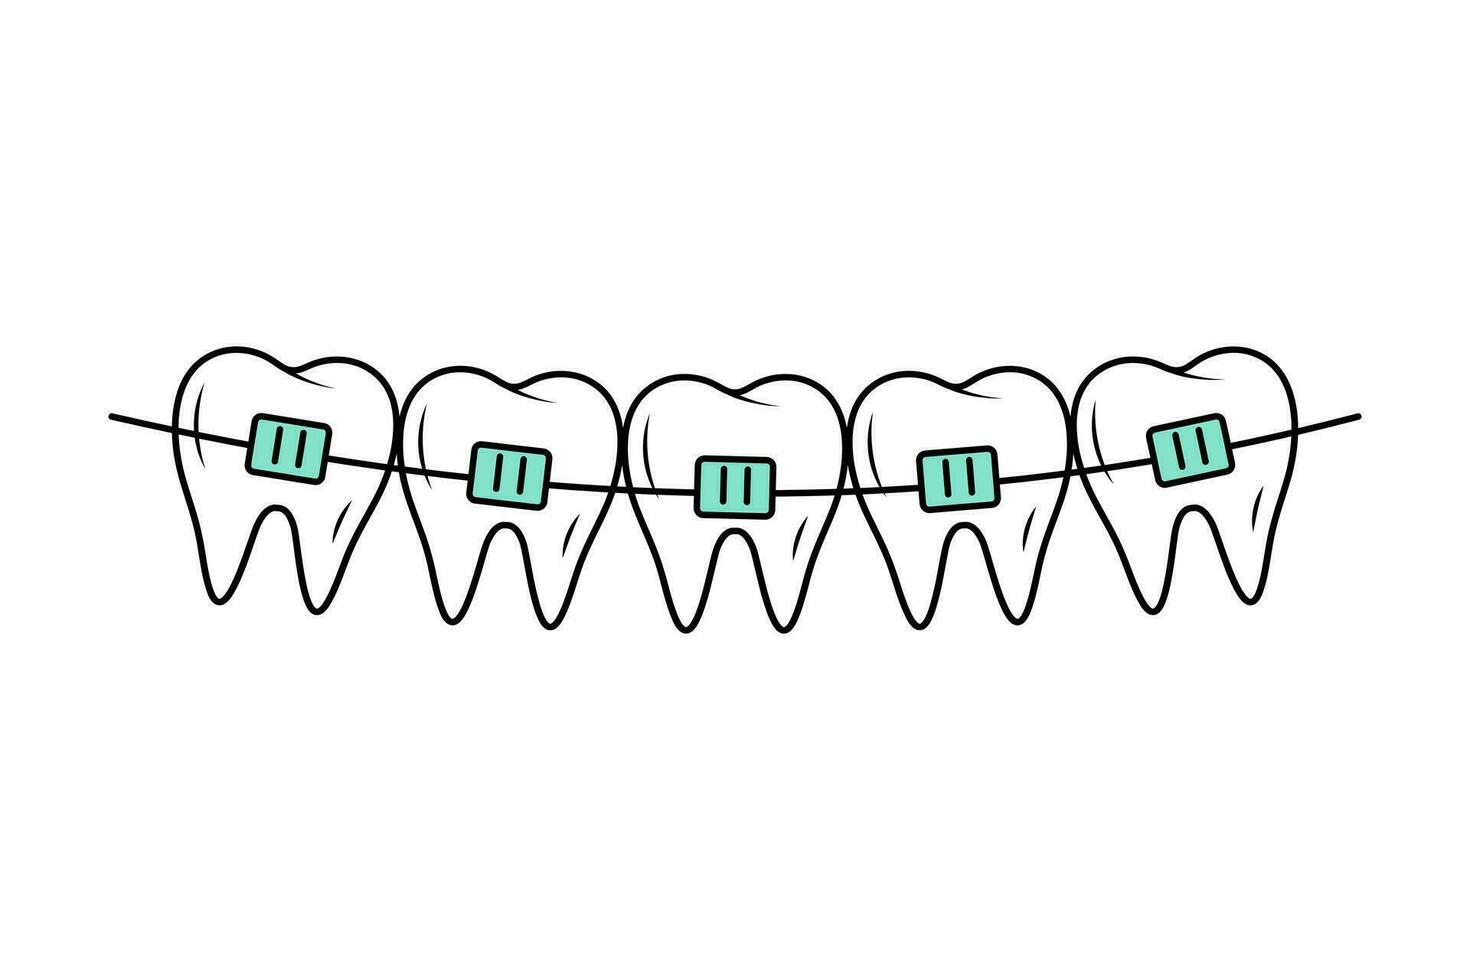 tänder med tandställning i klotter stil. korrigerande ortodonti. dental vård. linjär vektor illustration.